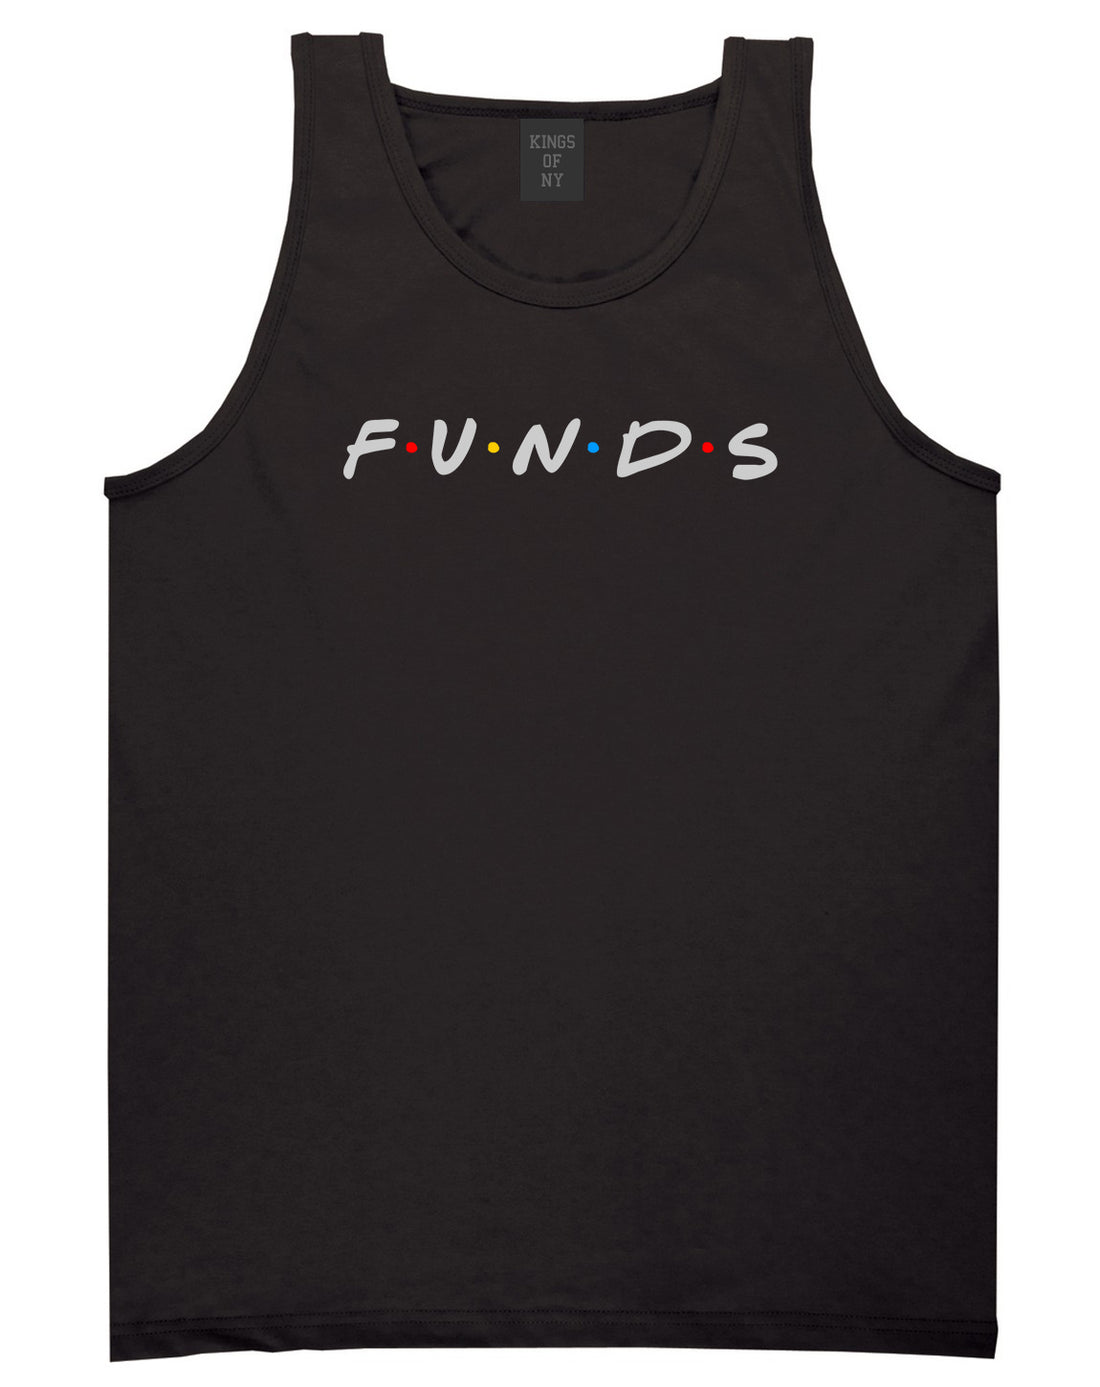 Funds Friends Mens Tank Top Shirt Black